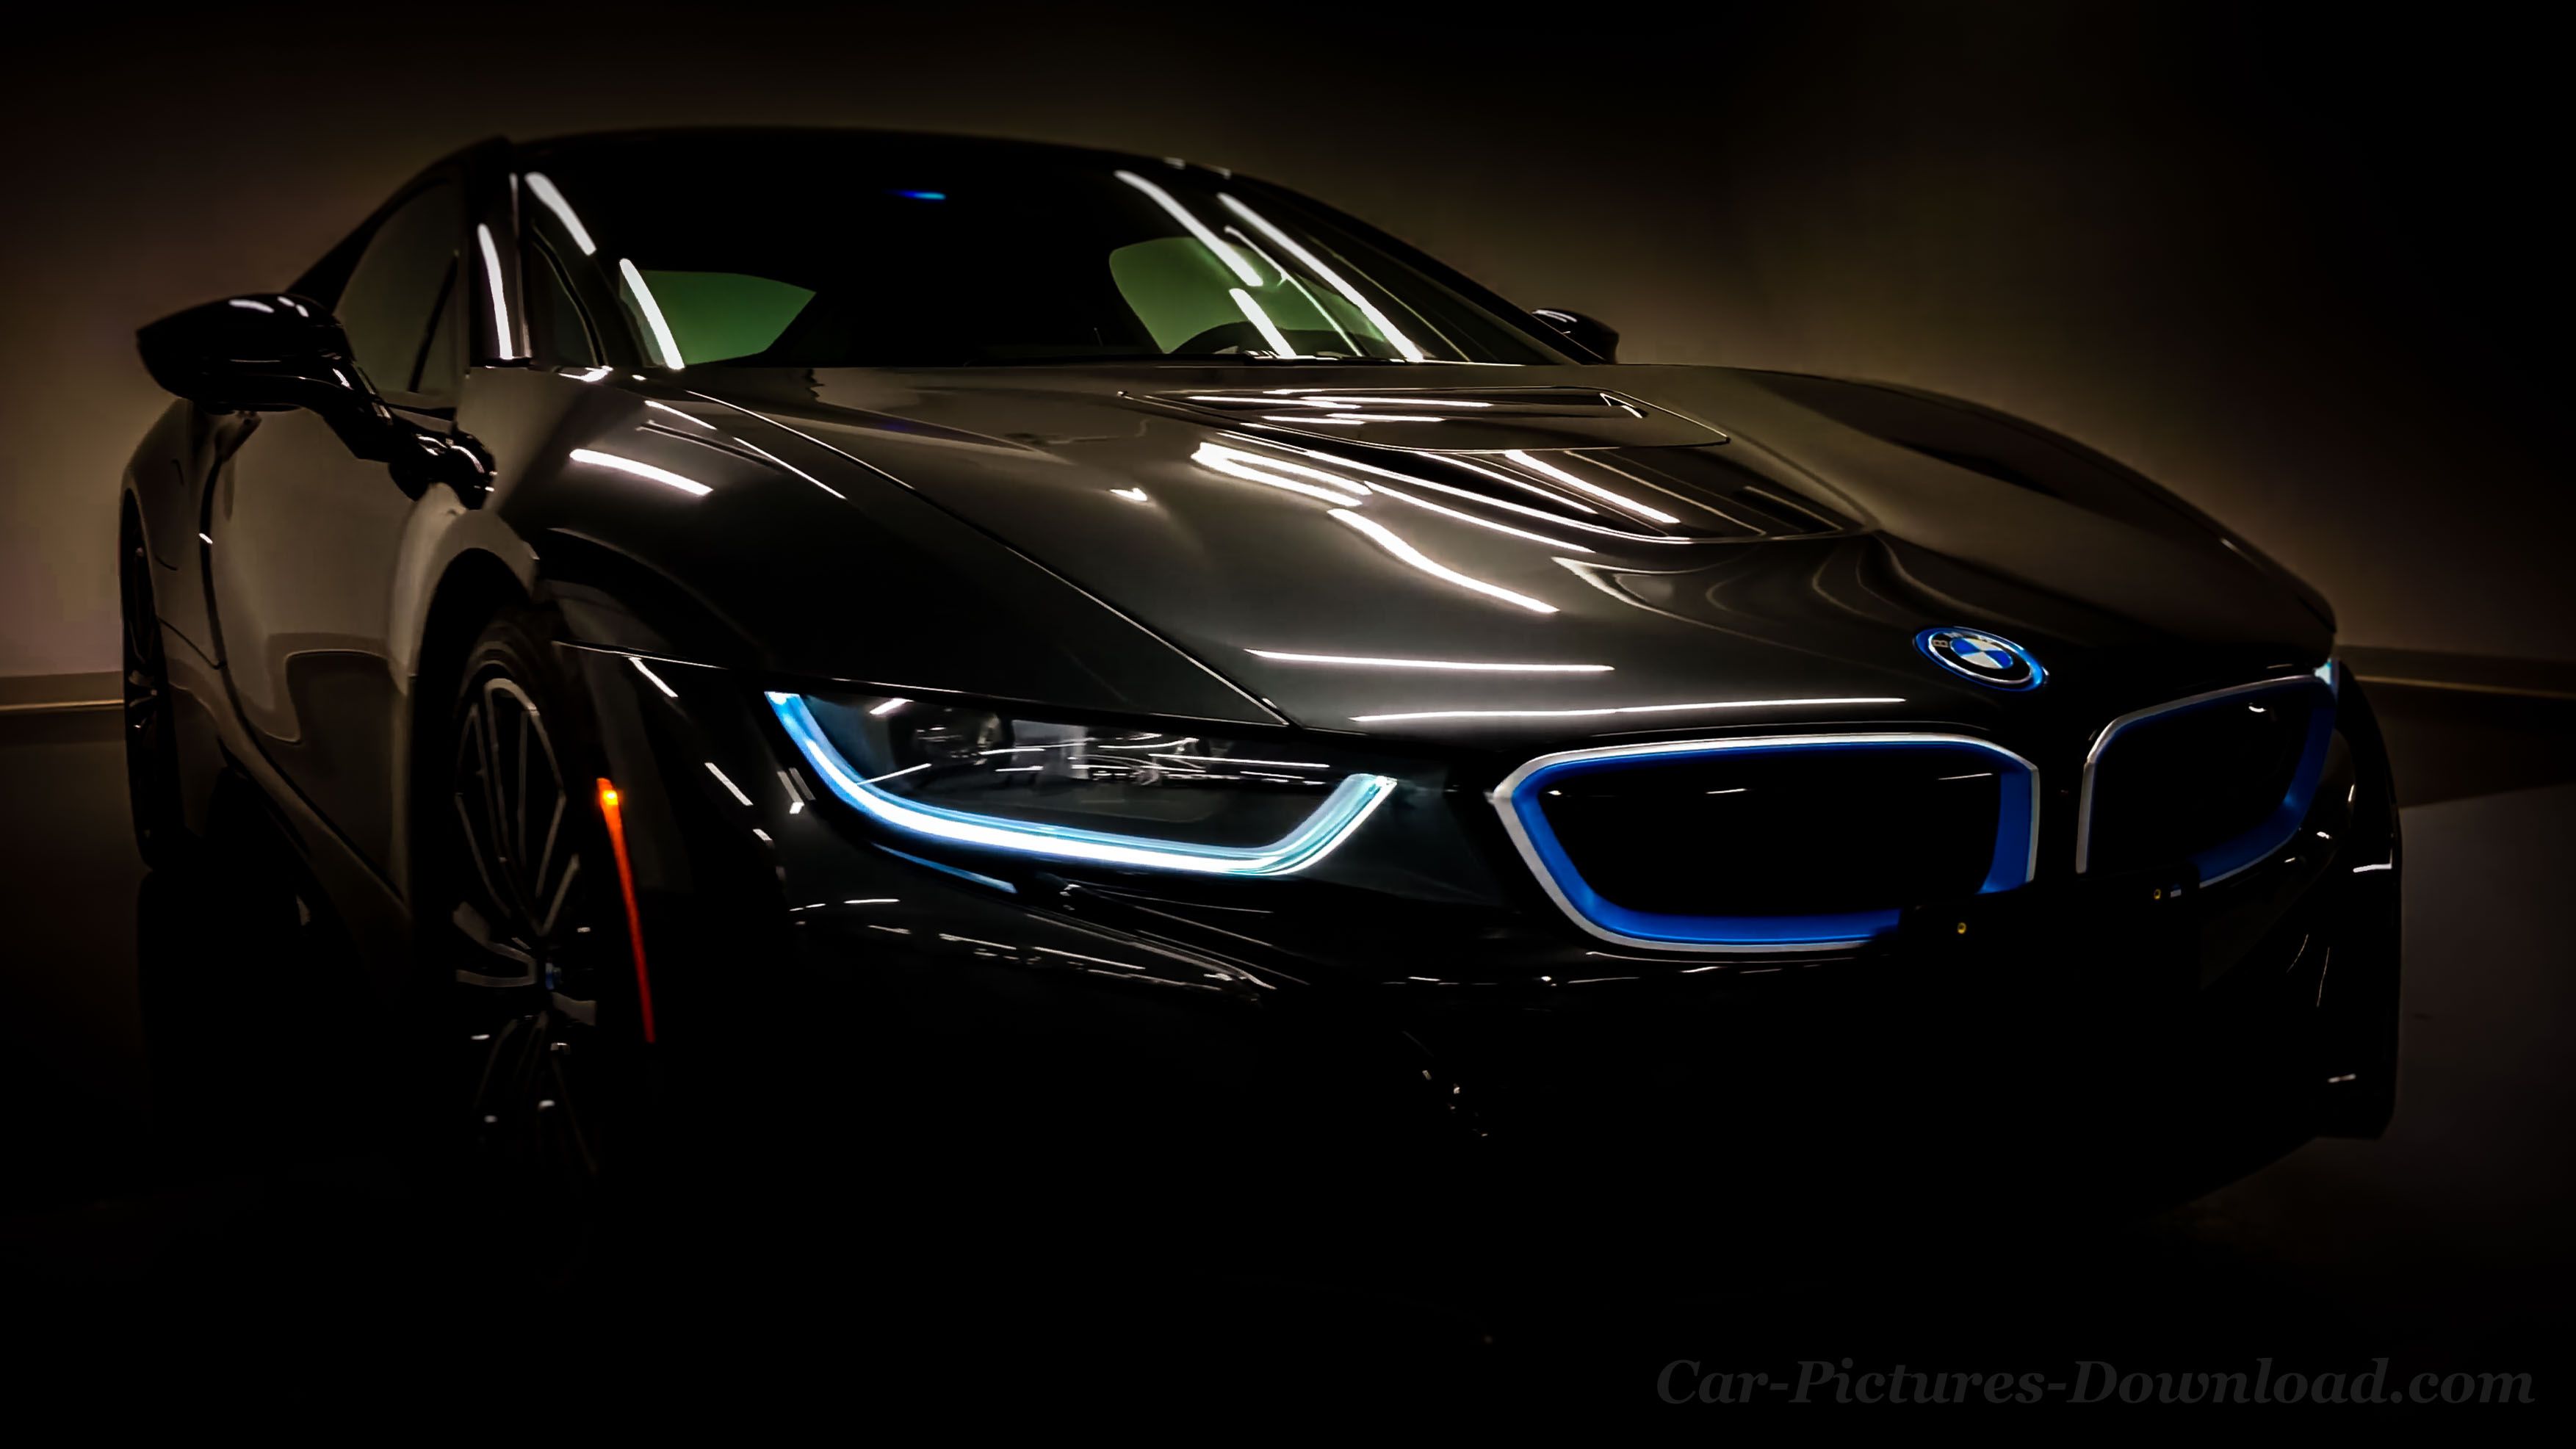 Bạn là người đam mê xe hơi và đặc biệt yêu thích dòng ô tô BMW? Hãy xem ngay bức hình ô tô BMW 4k, với độ phân giải gấp đôi so với hình ảnh thông thường. Bạn sẽ được trải nghiệm chi tiết các đường nét thiết kế của chiếc xe đỉnh cao này, trở nên sống động và chân thật hơn bao giờ hết.